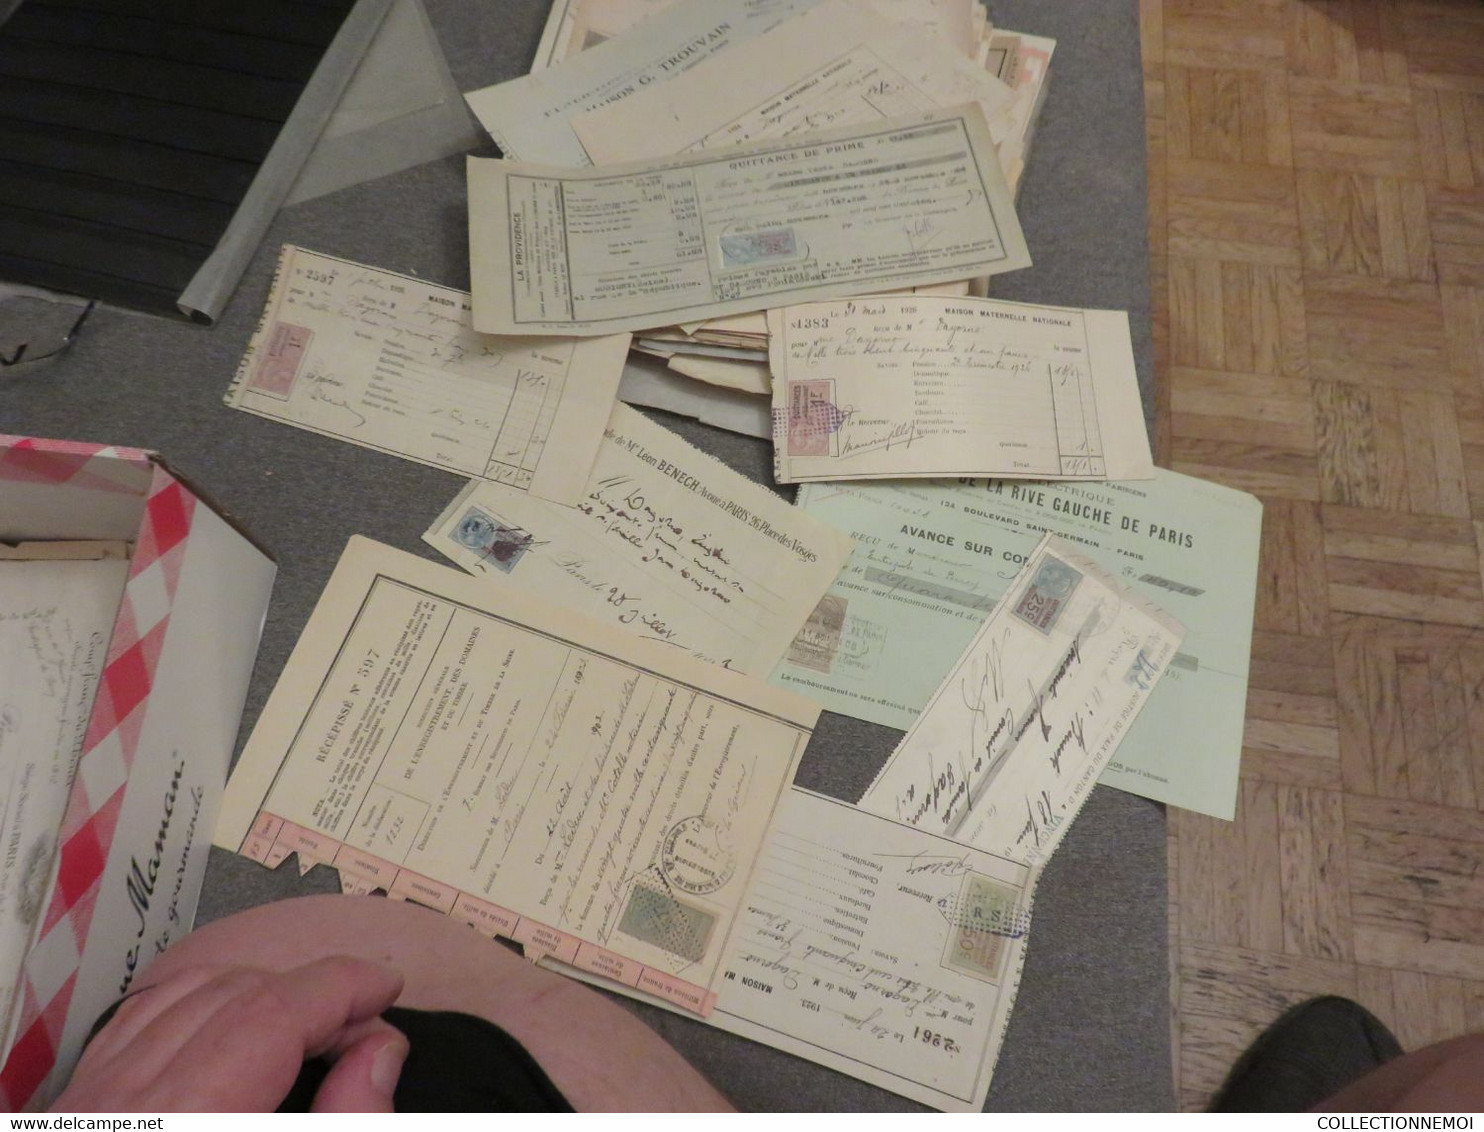 FISCAUX,,,,, des centaines de timbres et documents fiscaux ,pése 1 kilo 200 grammes